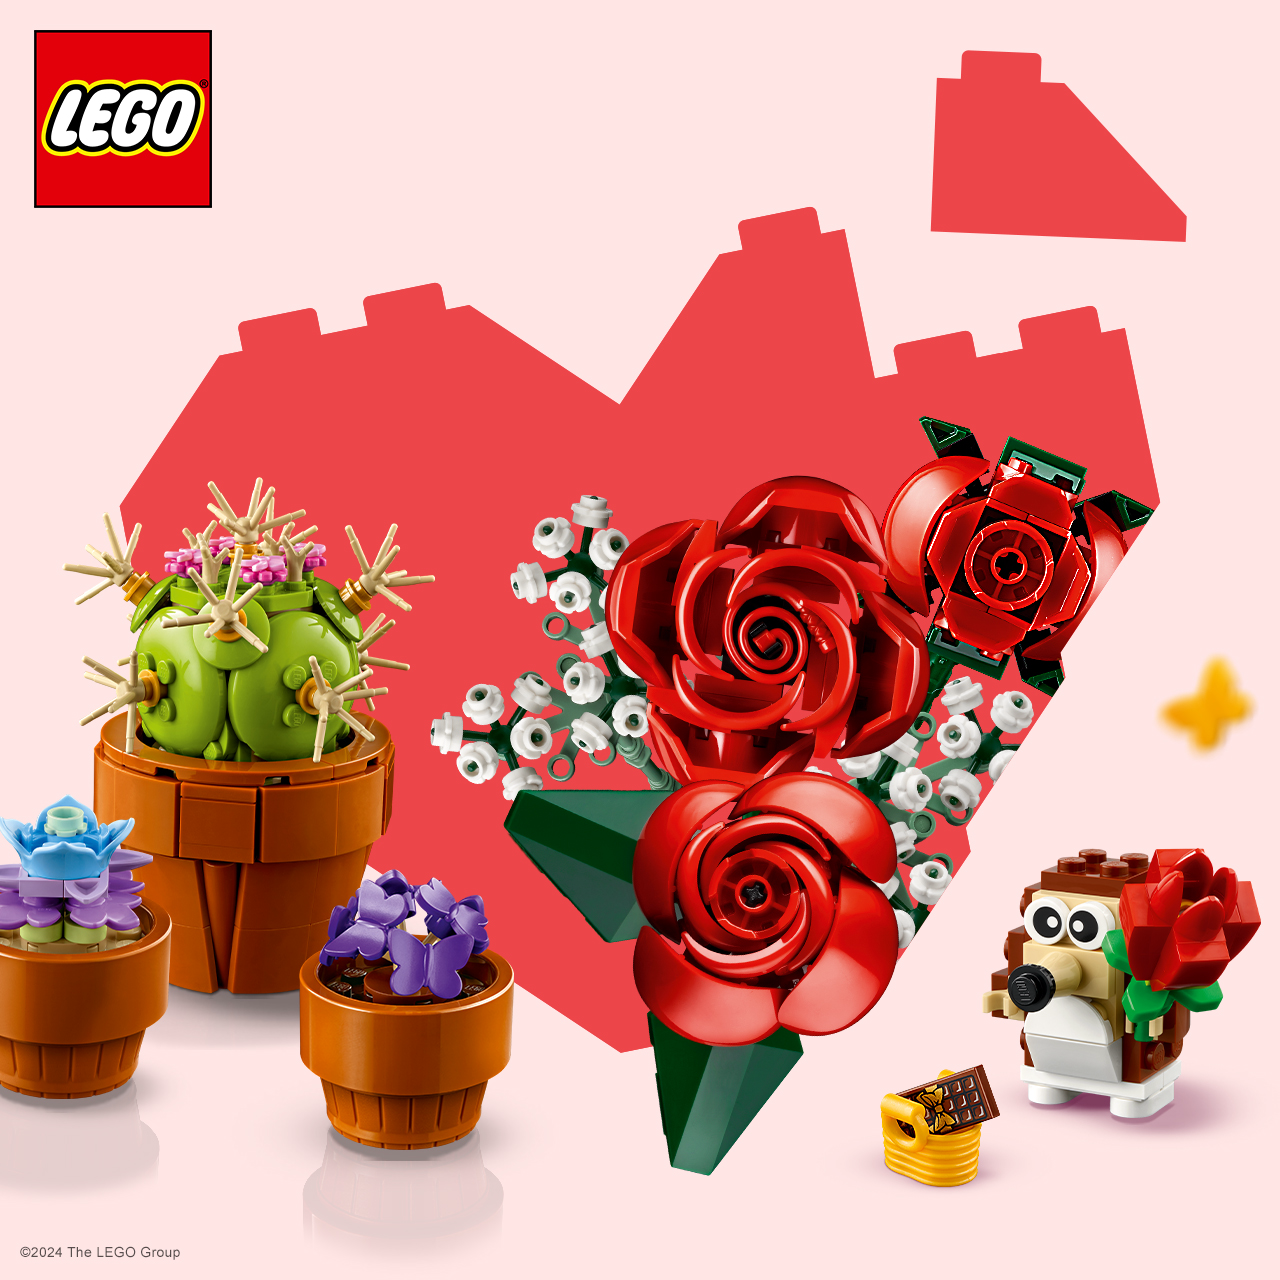 LEGO Campaign 17 Love thats built to last. EN 1280x1280 1